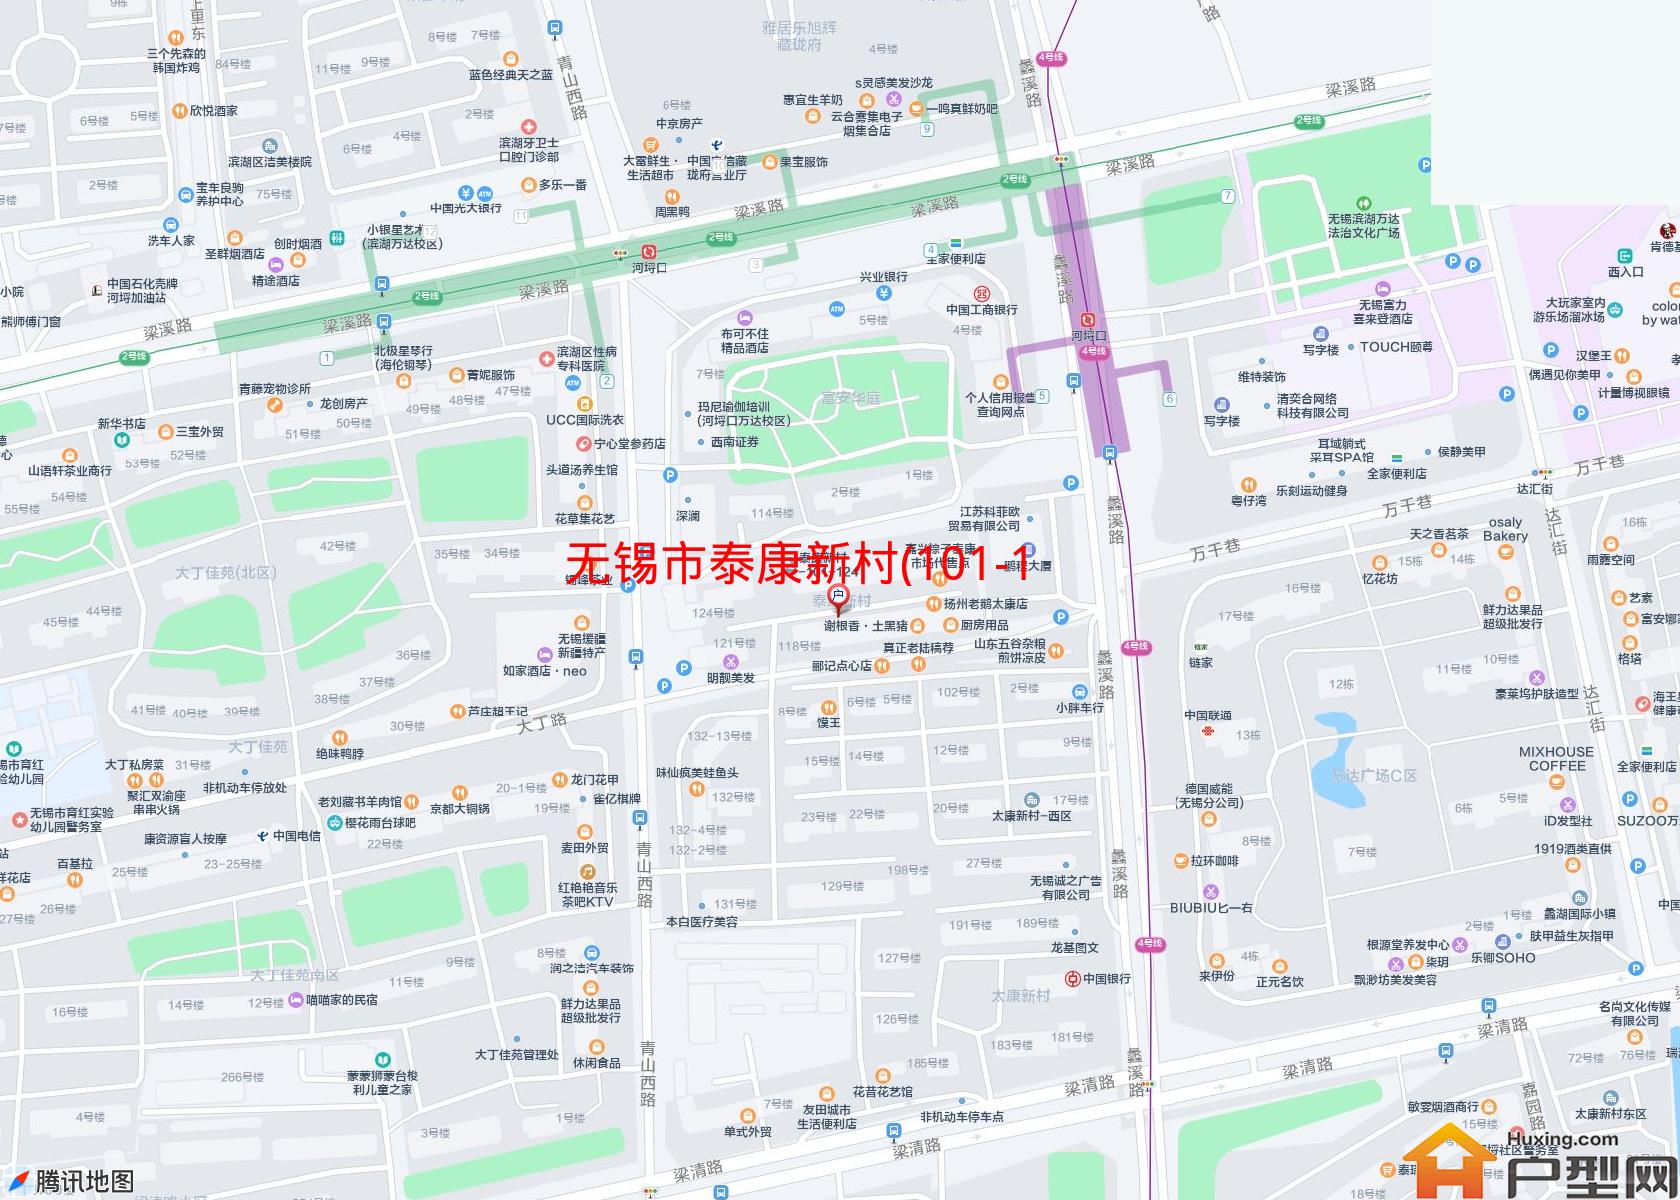 泰康新村(101-124)小区 - 户型网